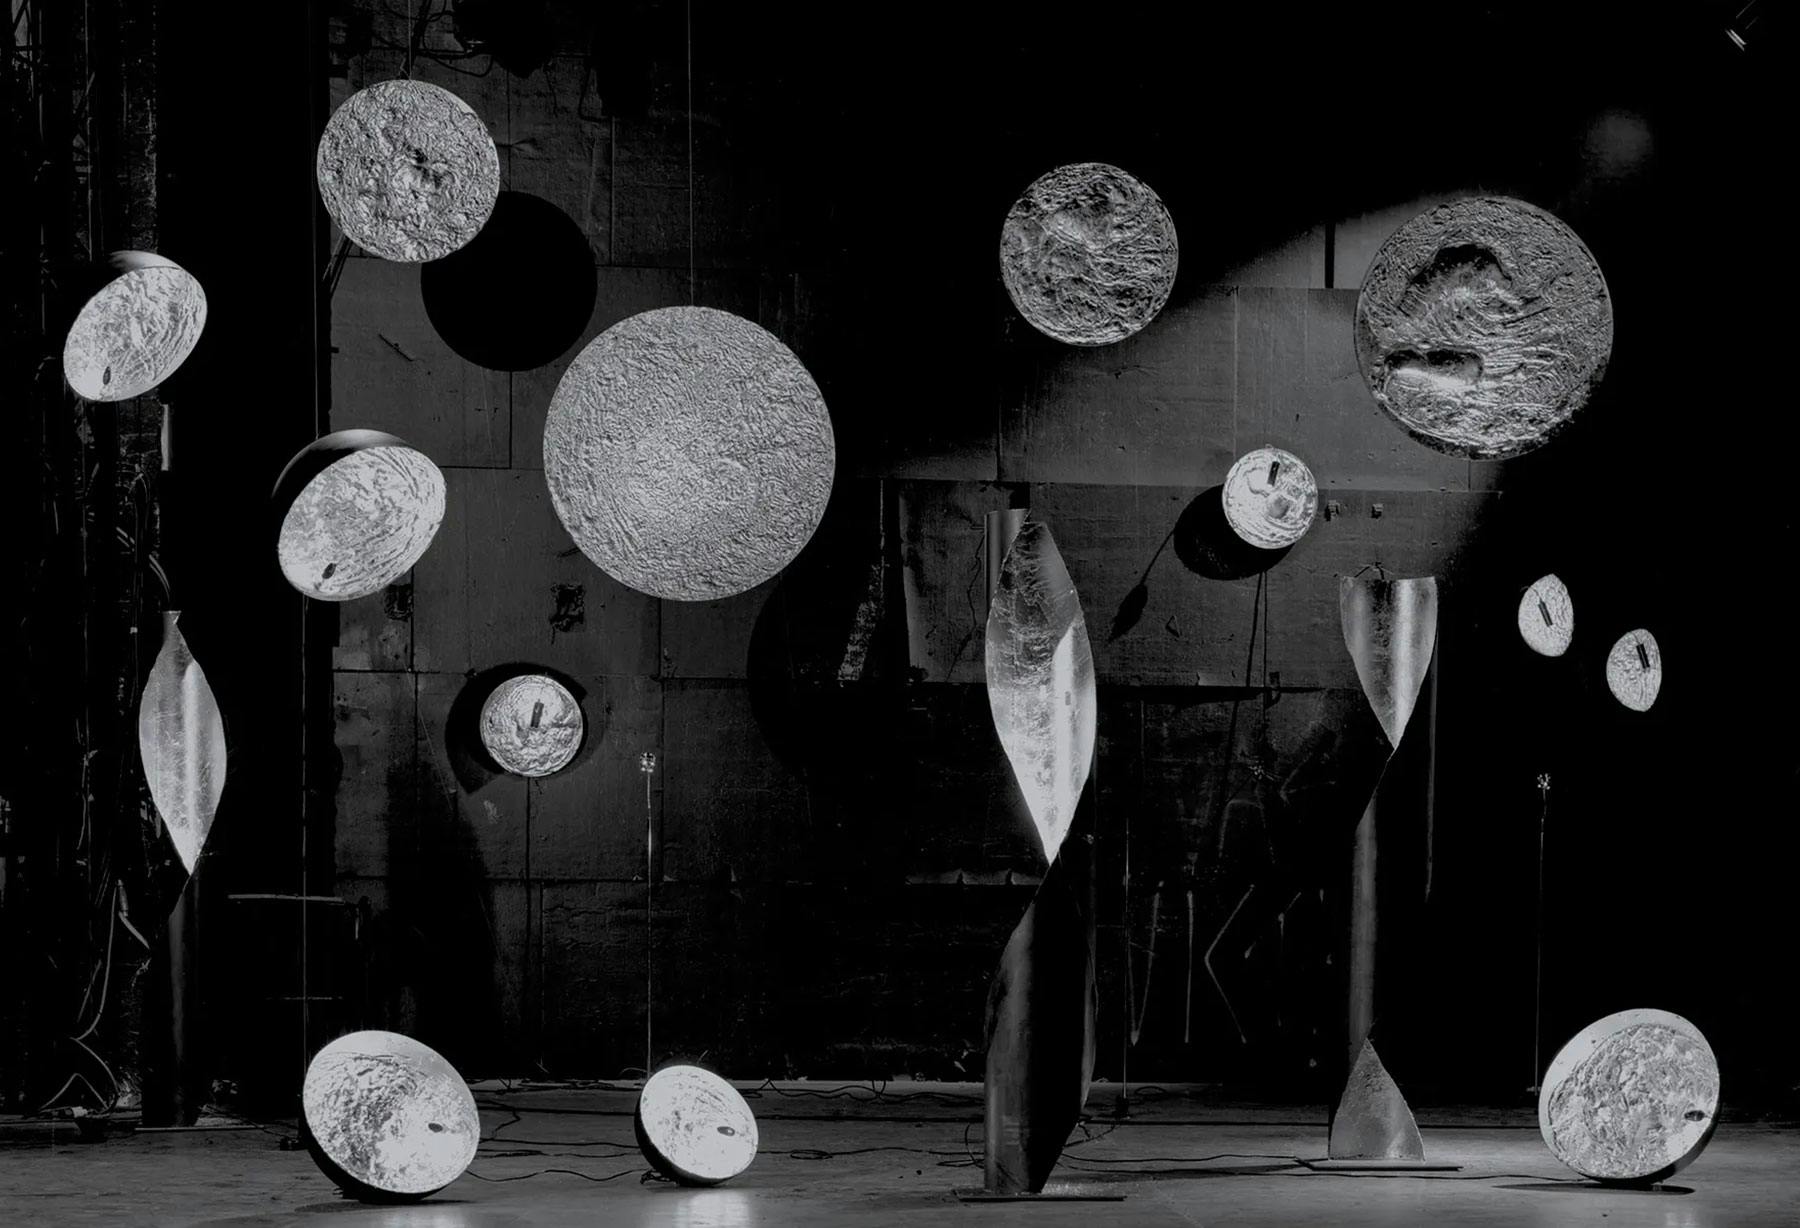 <p class="p1">Milano, Teatro Ciak: installazione Stchu-Moon</p>
